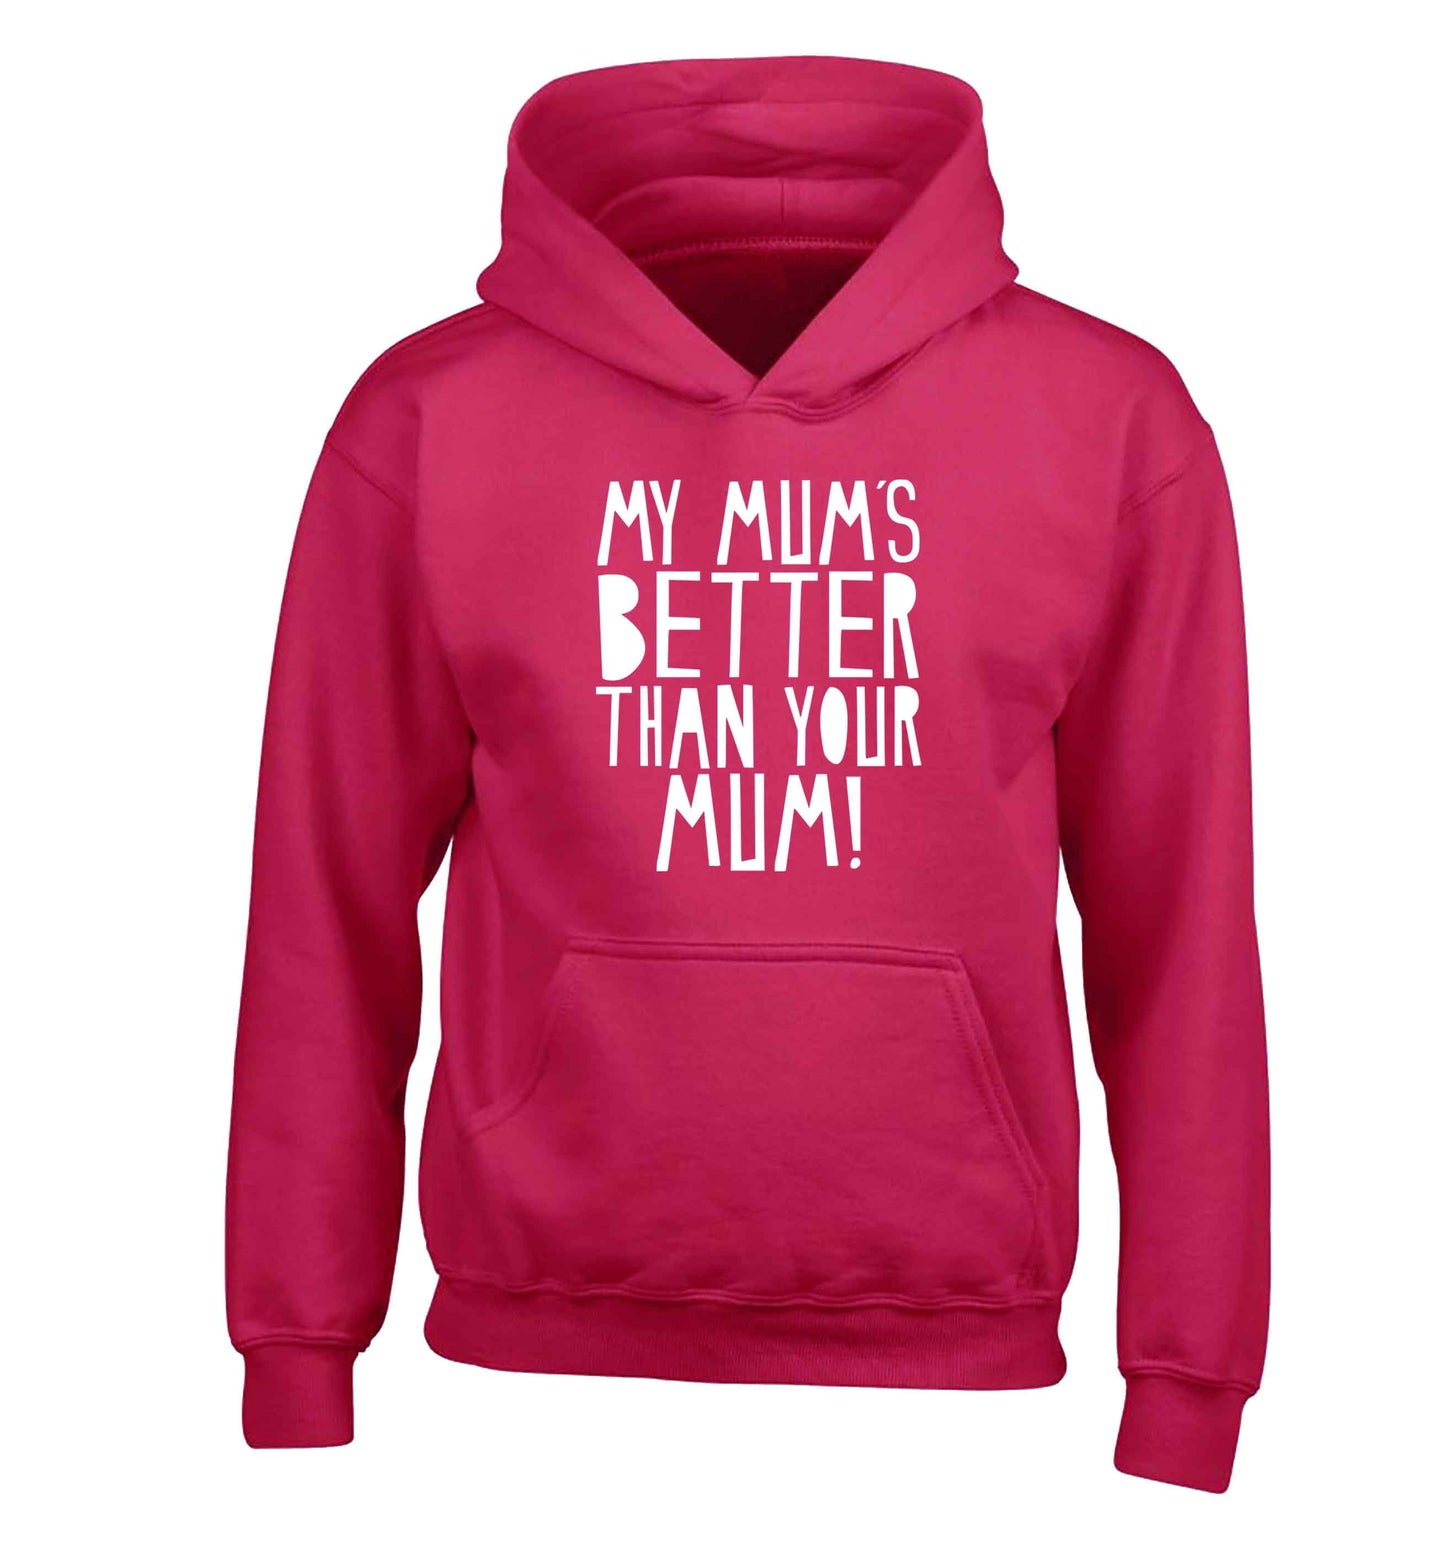 My mum's better than your mum children's pink hoodie 12-13 Years